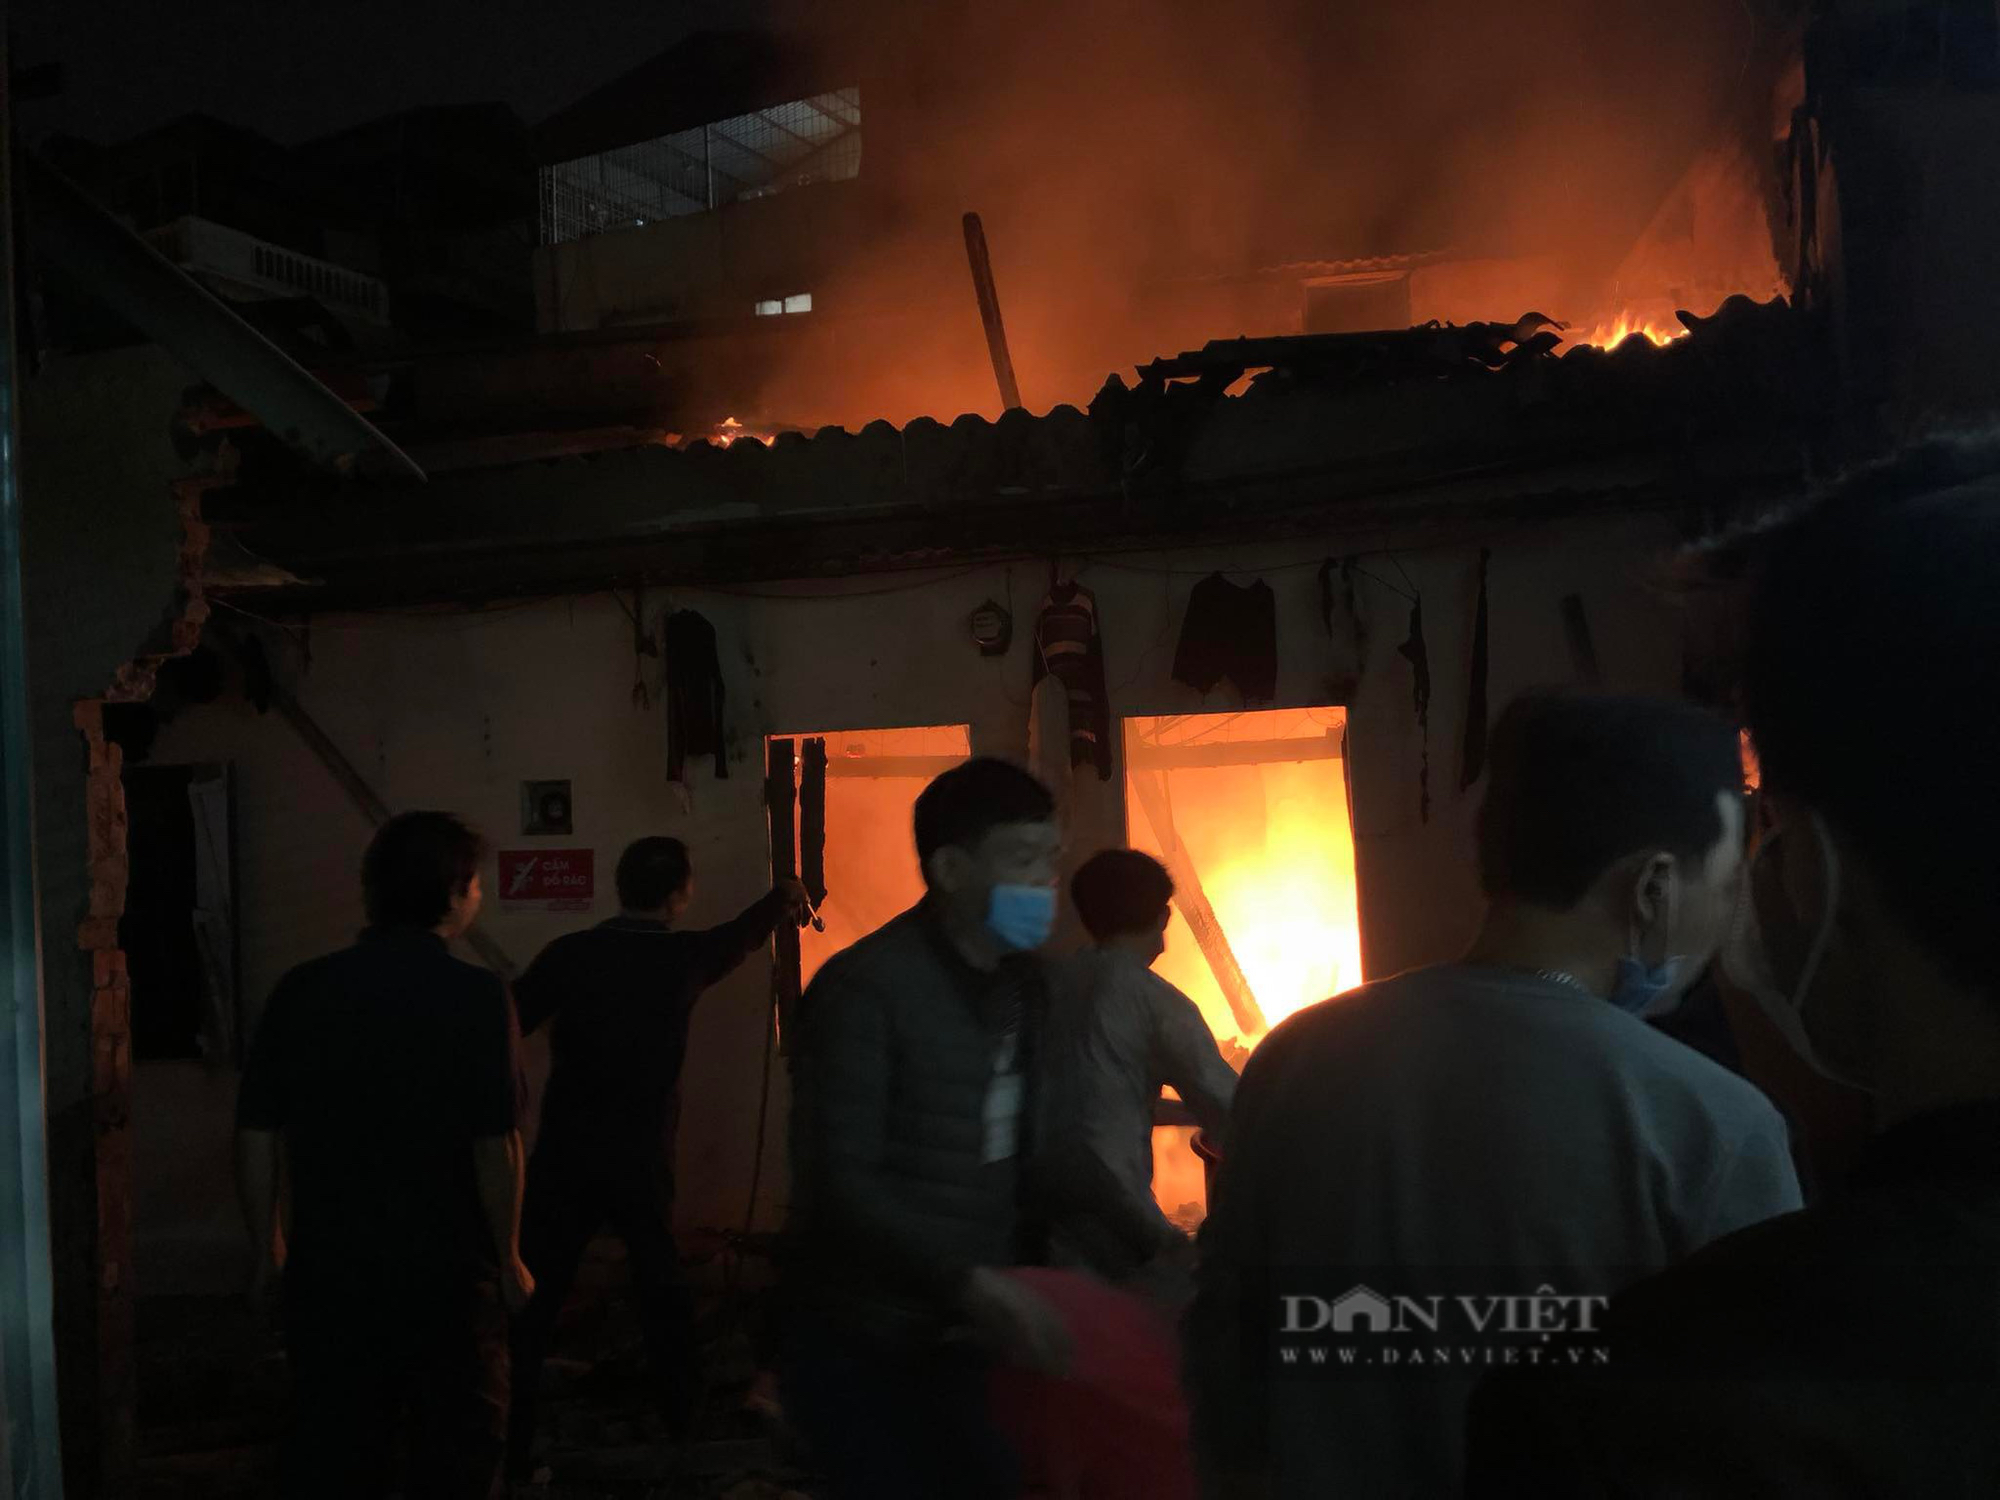 Liên tiếp xảy ra nhiều vụ cháy nổ tại Hà Nội, cảnh sát đưa ra kỹ năng xử lý lúc cấp bách - Ảnh 2.